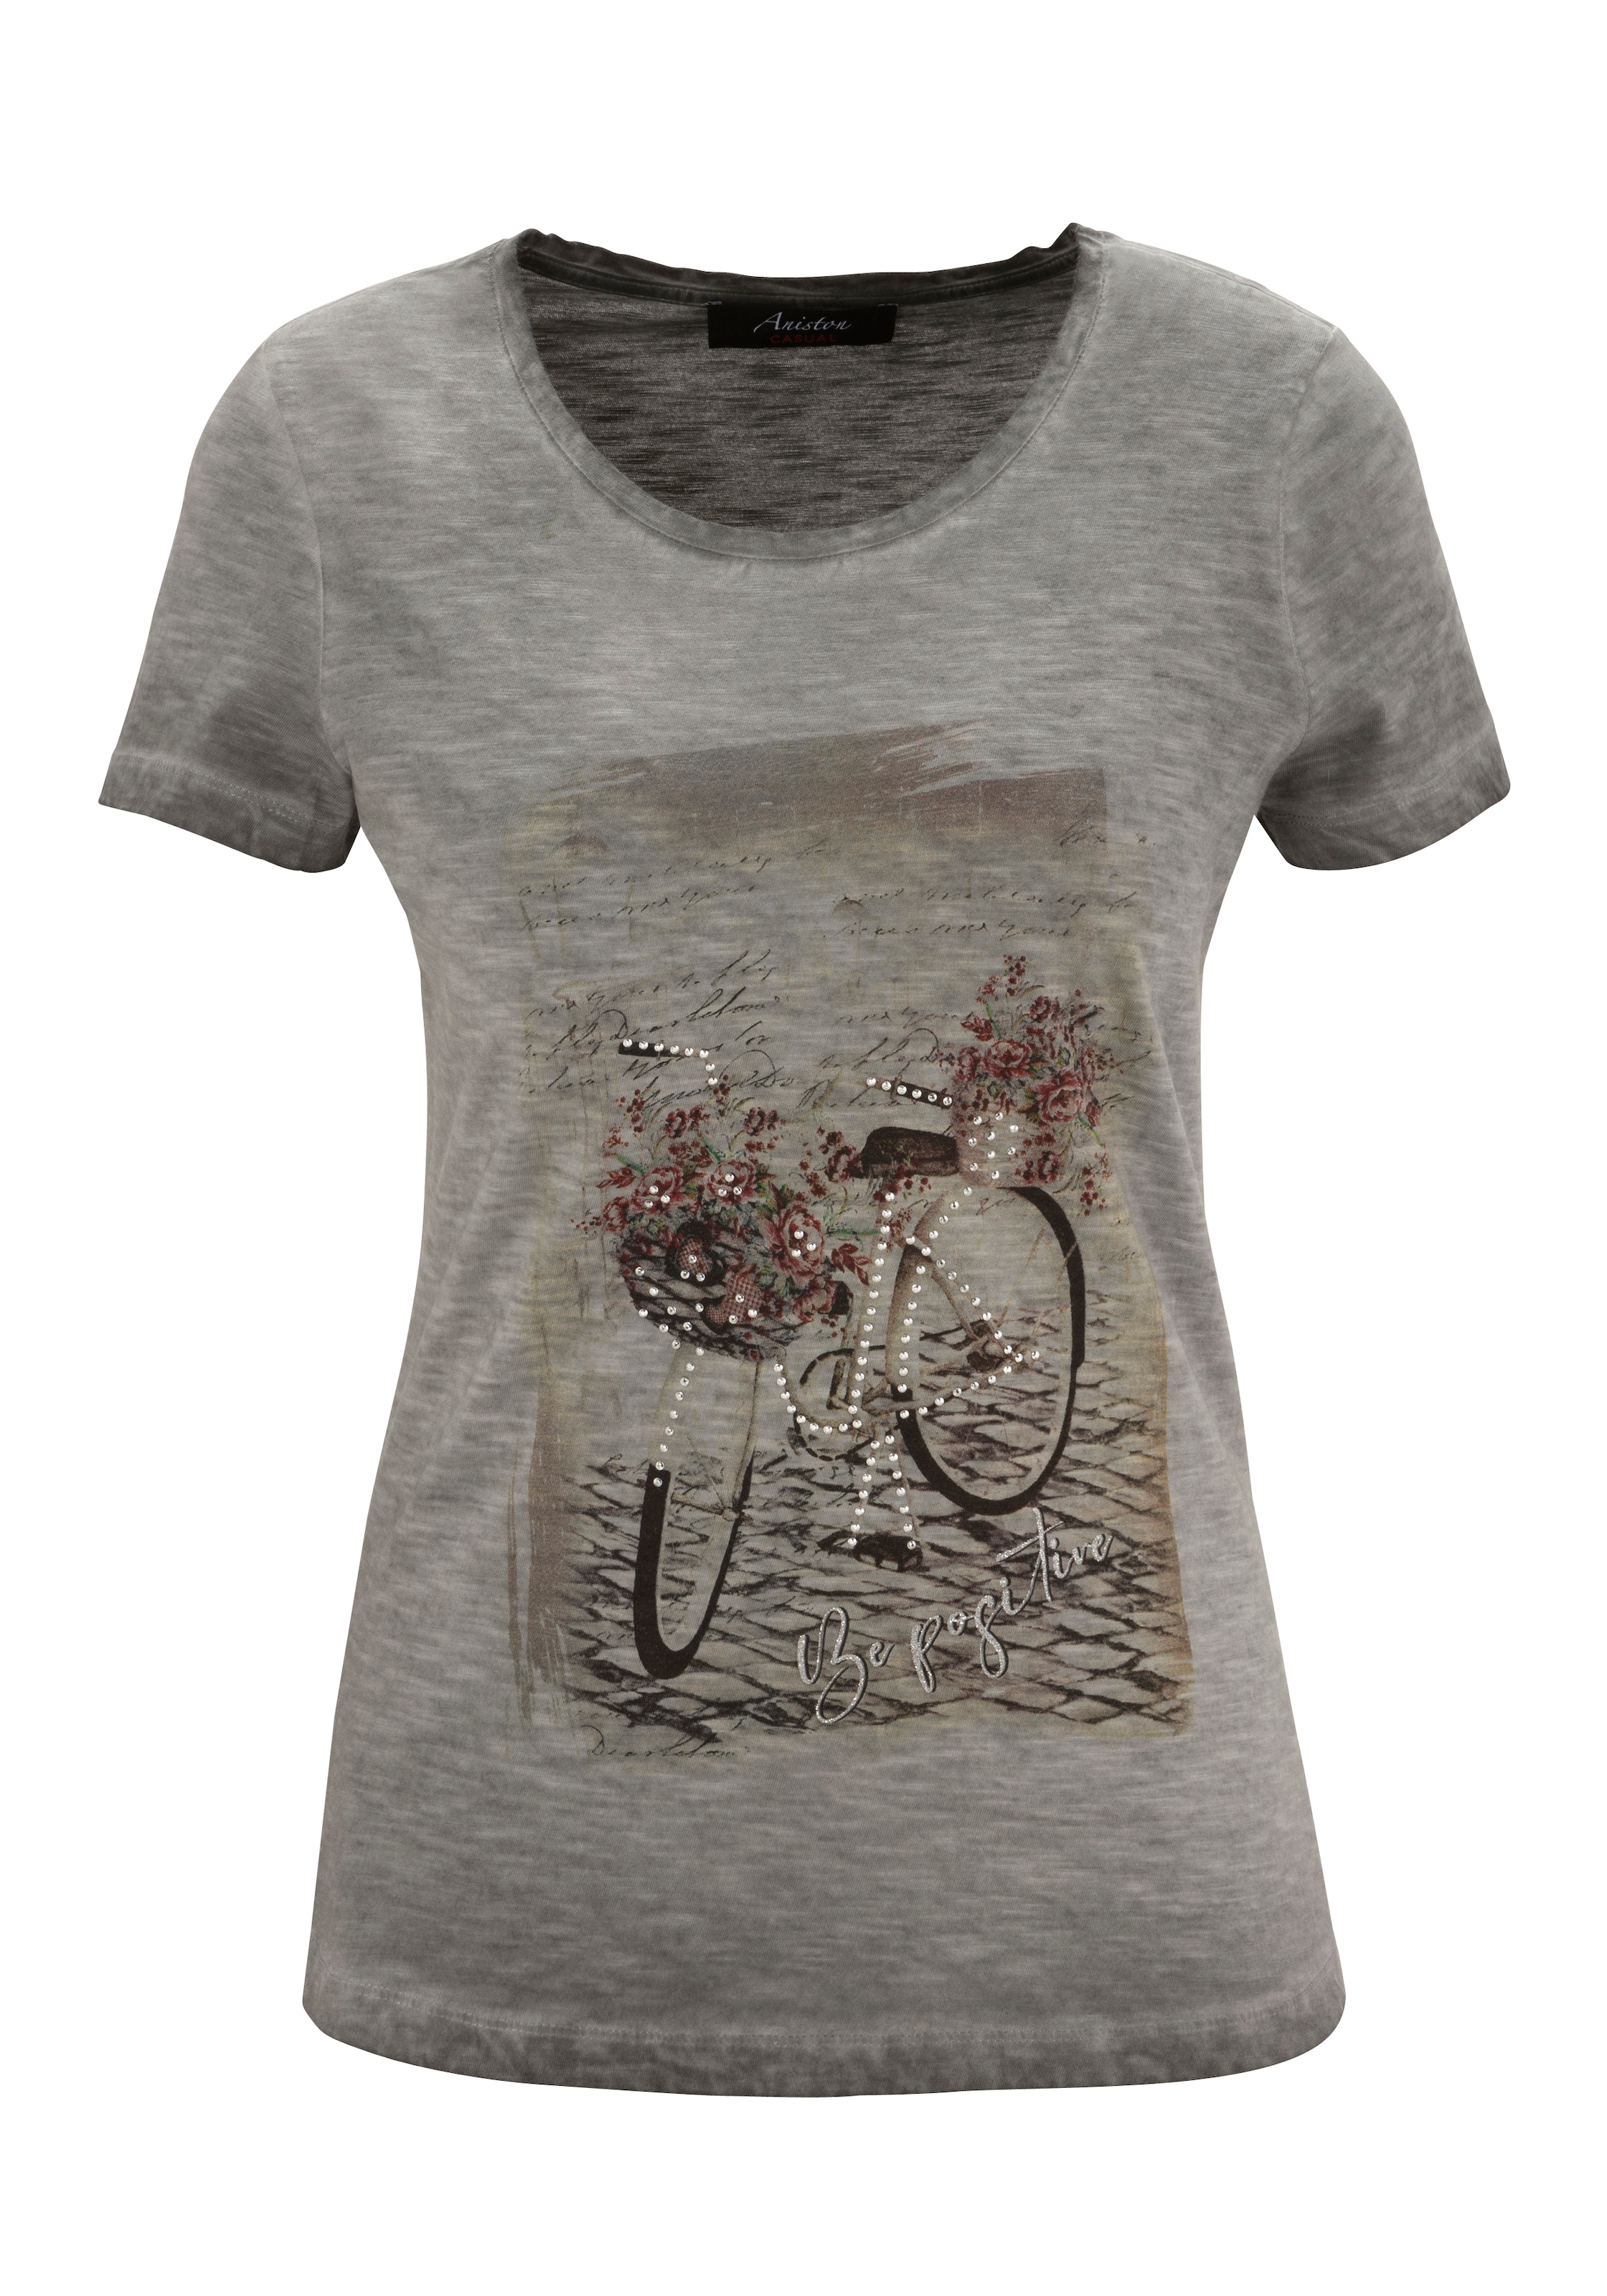 ♕ Aniston CASUAL versandkostenfrei mit verzierter T-Shirt, Frontdruck Glitzersteinchen auf